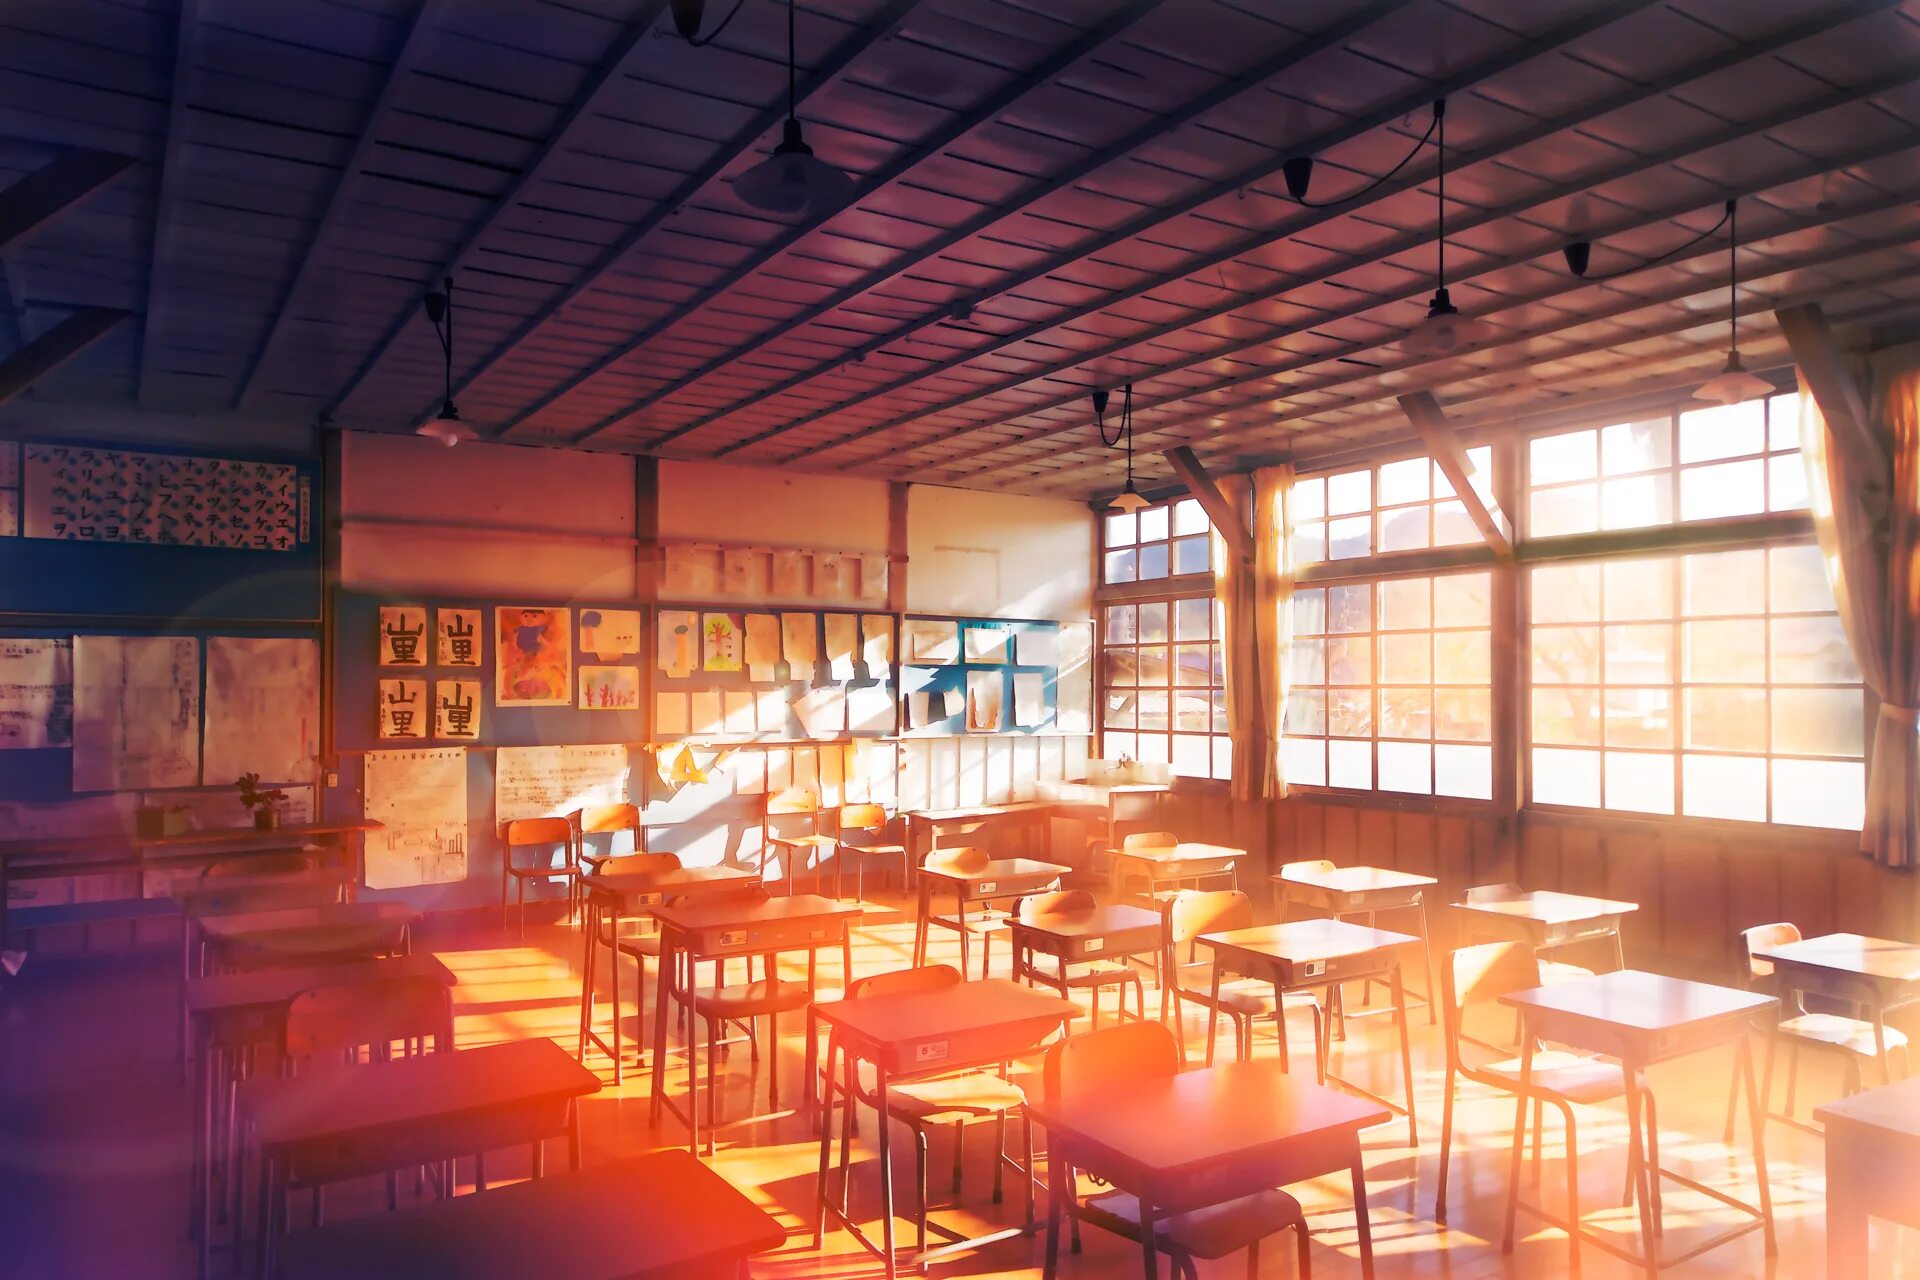 R34 classroom. Школы в Японии внутри.